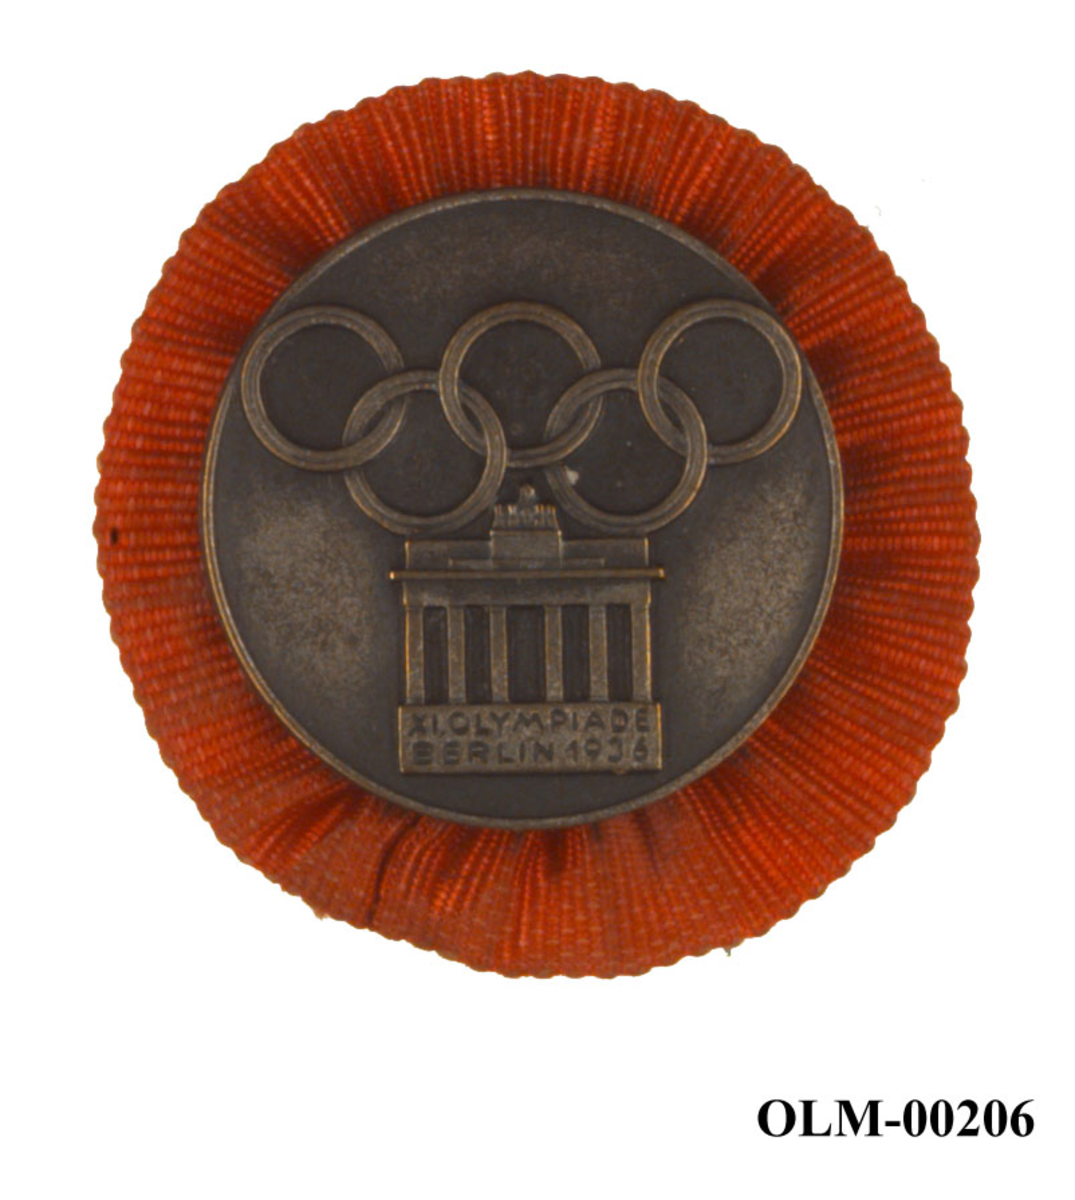 Rundt merke med en form for oransje rosett på baksiden. Merket har motiv av Brandenburg-porten i Berlin og de olympiske ringene. 